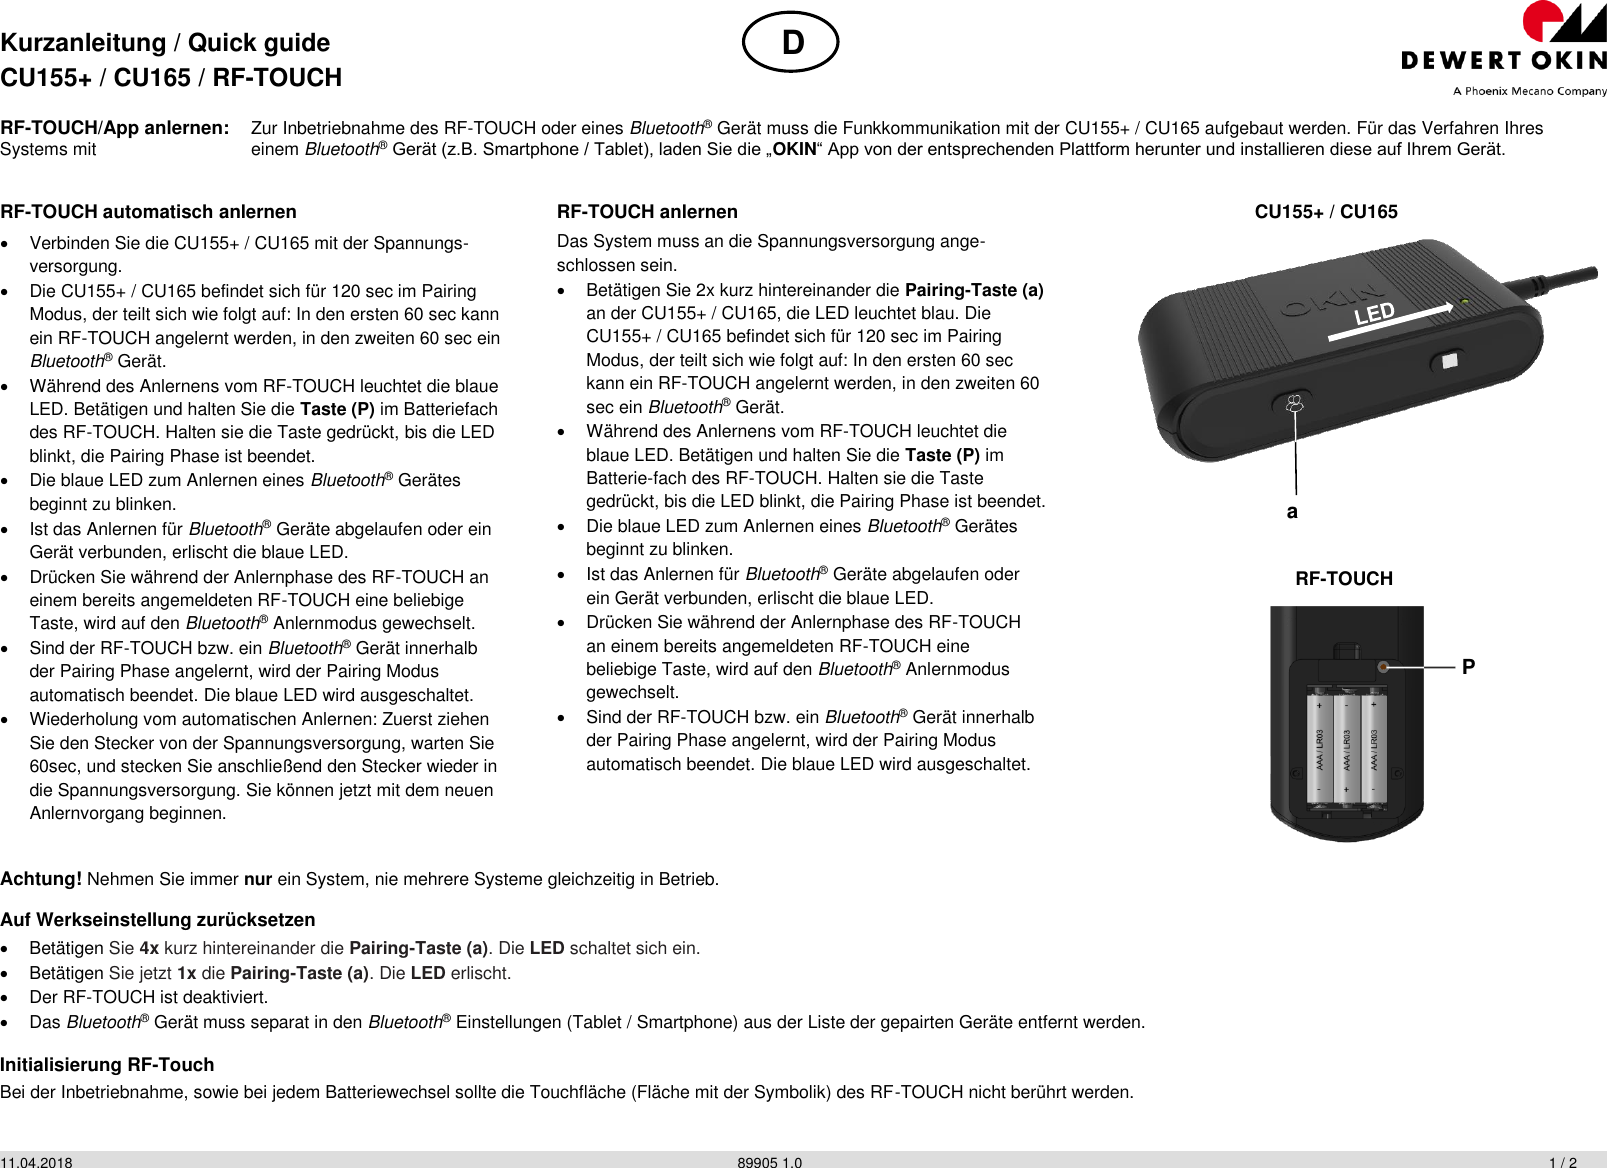 Kurzanleitung / Quick guide CU155+ / CU165 / RF-TOUCH  11.04.2018          89905 1.0           1 / 2 RF-TOUCH/App anlernen: Zur Inbetriebnahme des RF-TOUCH oder eines Bluetooth® Gerät muss die Funkkommunikation mit der CU155+ / CU165 aufgebaut werden. Für das Verfahren Ihres Systems mit   einem Bluetooth® Gerät (z.B. Smartphone / Tablet), laden Sie die „OKIN“ App von der entsprechenden Plattform herunter und installieren diese auf Ihrem Gerät. Achtung! Nehmen Sie immer nur ein System, nie mehrere Systeme gleichzeitig in Betrieb. Auf Werkseinstellung zurücksetzen   Betätigen Sie 4x kurz hintereinander die Pairing-Taste (a). Die LED schaltet sich ein.   Betätigen Sie jetzt 1x die Pairing-Taste (a). Die LED erlischt.   Der RF-TOUCH ist deaktiviert.   Das Bluetooth® Gerät muss separat in den Bluetooth® Einstellungen (Tablet / Smartphone) aus der Liste der gepairten Geräte entfernt werden. Initialisierung RF-Touch Bei der Inbetriebnahme, sowie bei jedem Batteriewechsel sollte die Touchfläche (Fläche mit der Symbolik) des RF-TOUCH nicht berührt werden.  RF-TOUCH automatisch anlernen   Verbinden Sie die CU155+ / CU165 mit der Spannungs-versorgung.   Die CU155+ / CU165 befindet sich für 120 sec im Pairing Modus, der teilt sich wie folgt auf: In den ersten 60 sec kann ein RF-TOUCH angelernt werden, in den zweiten 60 sec ein Bluetooth® Gerät.   Während des Anlernens vom RF-TOUCH leuchtet die blaue LED. Betätigen und halten Sie die Taste (P) im Batteriefach des RF-TOUCH. Halten sie die Taste gedrückt, bis die LED blinkt, die Pairing Phase ist beendet.   Die blaue LED zum Anlernen eines Bluetooth® Gerätes beginnt zu blinken.   Ist das Anlernen für Bluetooth® Geräte abgelaufen oder ein Gerät verbunden, erlischt die blaue LED.   Drücken Sie während der Anlernphase des RF-TOUCH an einem bereits angemeldeten RF-TOUCH eine beliebige Taste, wird auf den Bluetooth® Anlernmodus gewechselt.   Sind der RF-TOUCH bzw. ein Bluetooth® Gerät innerhalb der Pairing Phase angelernt, wird der Pairing Modus automatisch beendet. Die blaue LED wird ausgeschaltet.   Wiederholung vom automatischen Anlernen: Zuerst ziehen Sie den Stecker von der Spannungsversorgung, warten Sie 60sec, und stecken Sie anschließend den Stecker wieder in die Spannungsversorgung. Sie können jetzt mit dem neuen Anlernvorgang beginnen.  RF-TOUCH anlernen Das System muss an die Spannungsversorgung ange-schlossen sein.   Betätigen Sie 2x kurz hintereinander die Pairing-Taste (a) an der CU155+ / CU165, die LED leuchtet blau. Die CU155+ / CU165 befindet sich für 120 sec im Pairing Modus, der teilt sich wie folgt auf: In den ersten 60 sec kann ein RF-TOUCH angelernt werden, in den zweiten 60 sec ein Bluetooth® Gerät.   Während des Anlernens vom RF-TOUCH leuchtet die blaue LED. Betätigen und halten Sie die Taste (P) im Batterie-fach des RF-TOUCH. Halten sie die Taste gedrückt, bis die LED blinkt, die Pairing Phase ist beendet.   Die blaue LED zum Anlernen eines Bluetooth® Gerätes beginnt zu blinken.   Ist das Anlernen für Bluetooth® Geräte abgelaufen oder ein Gerät verbunden, erlischt die blaue LED.   Drücken Sie während der Anlernphase des RF-TOUCH an einem bereits angemeldeten RF-TOUCH eine beliebige Taste, wird auf den Bluetooth® Anlernmodus gewechselt.   Sind der RF-TOUCH bzw. ein Bluetooth® Gerät innerhalb der Pairing Phase angelernt, wird der Pairing Modus automatisch beendet. Die blaue LED wird ausgeschaltet.  CU155+ / CU165  RF-TOUCH  D P a 